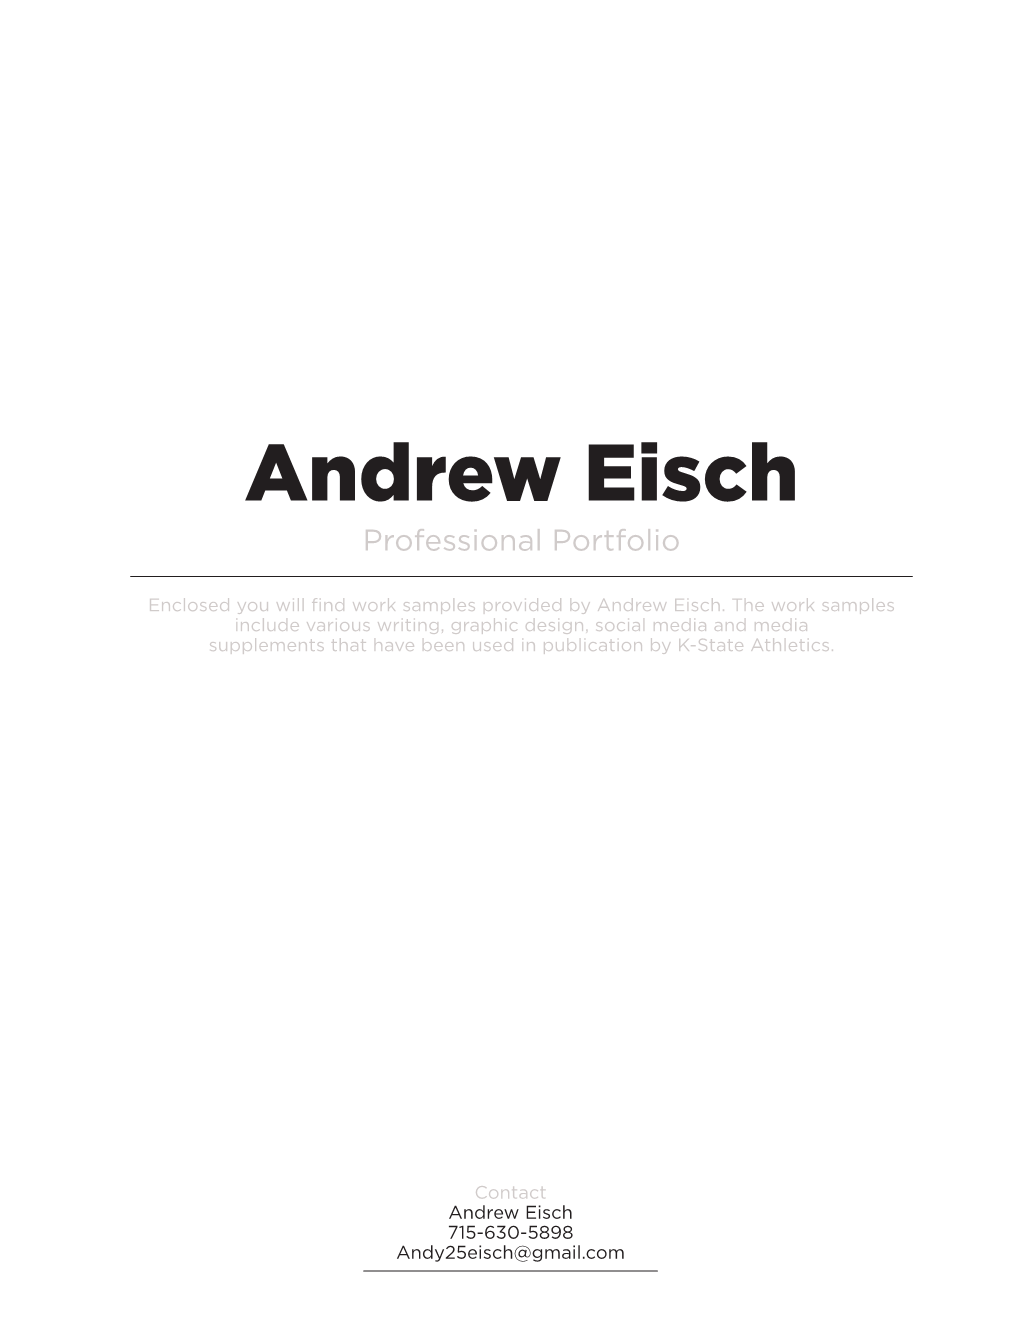 Andrew Eisch Professional Portfolio